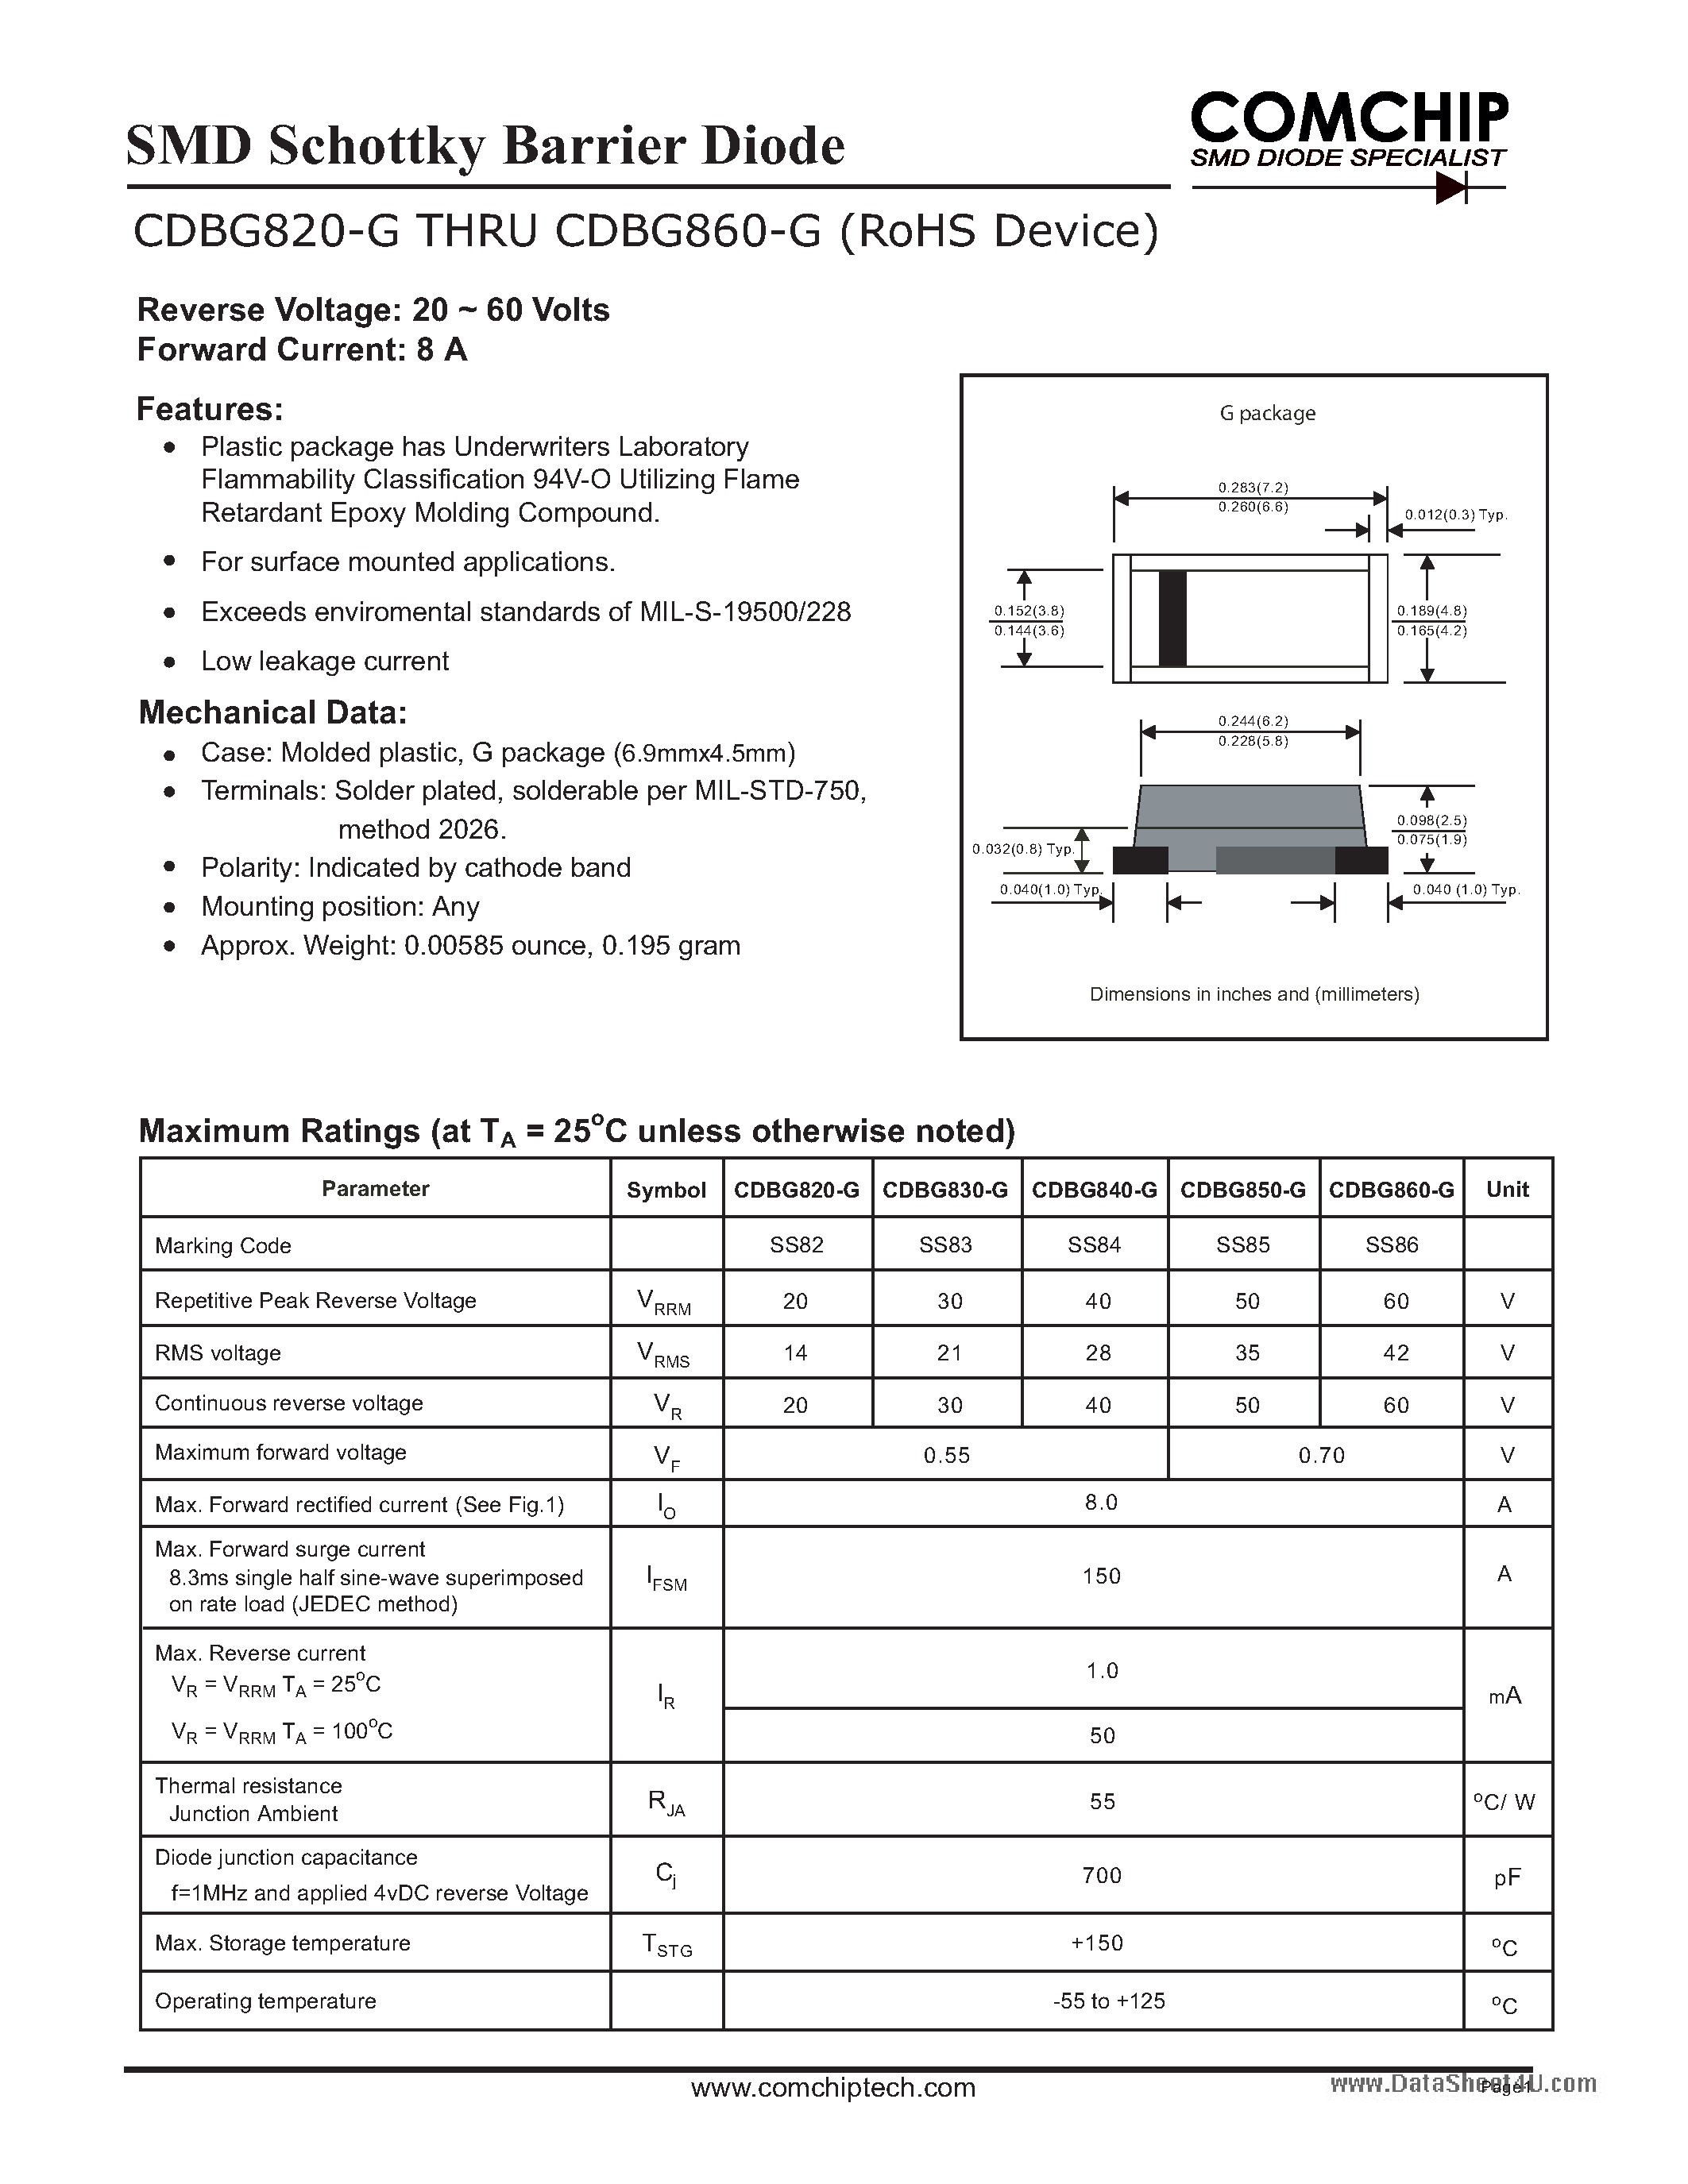 Datasheet CDBG820-G - (CDBG820-G - CDBG860-G) SMD Schottky Barrier Diode page 1